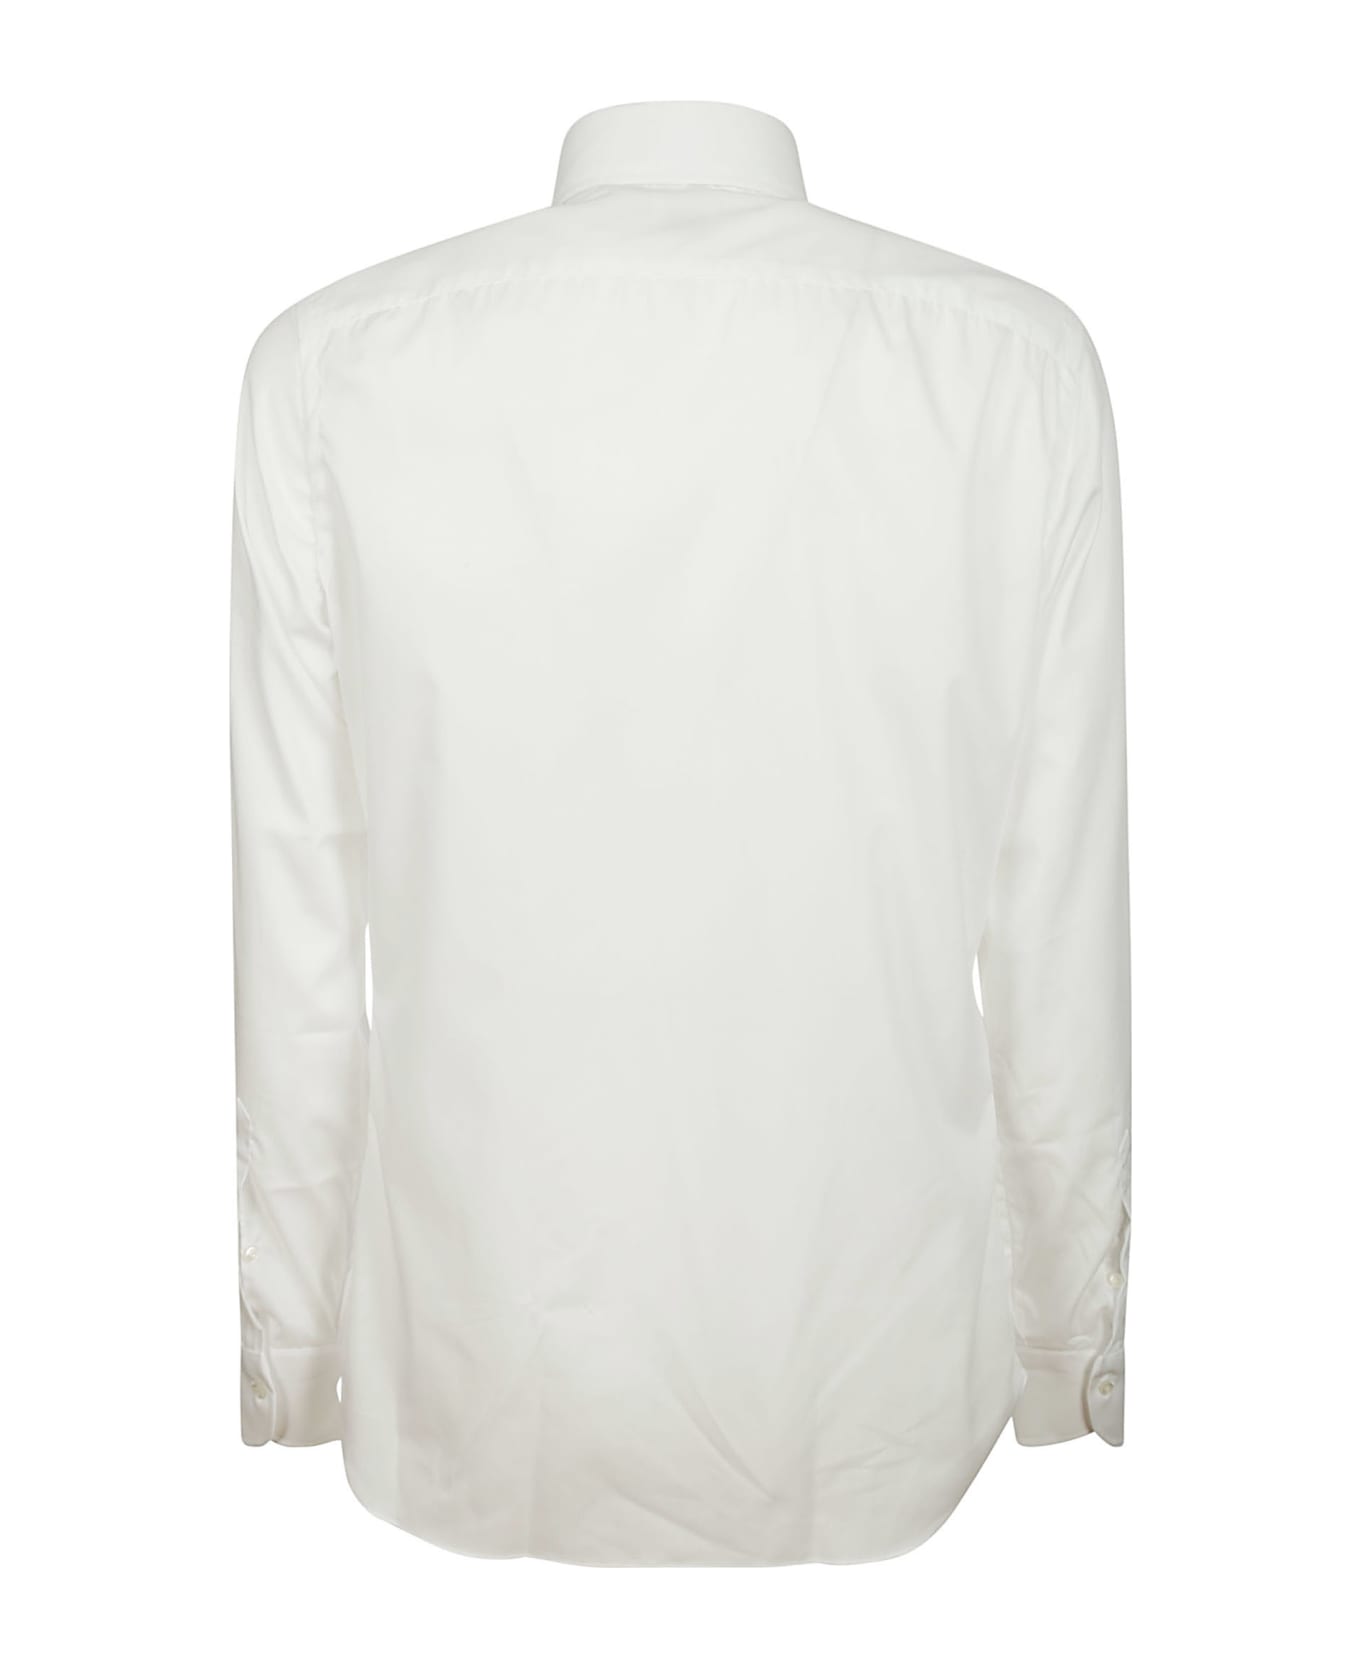 Borriello Napoli Shirt No Iron - White